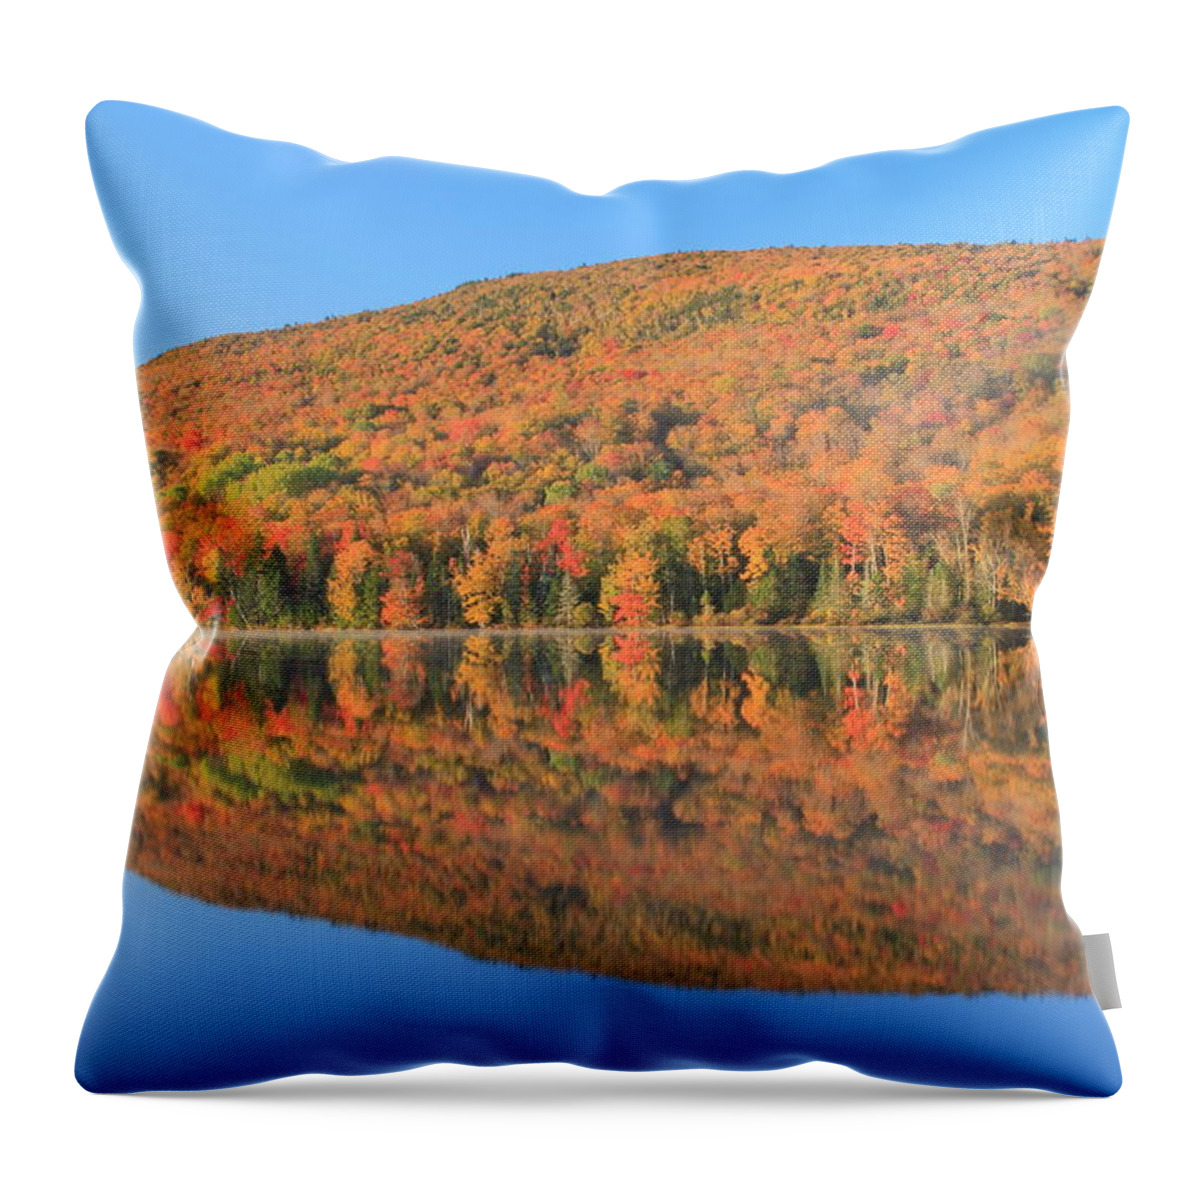 White Mountains Throw Pillow featuring the photograph Lake Katherine White MountainsAutumn Morning by John Burk